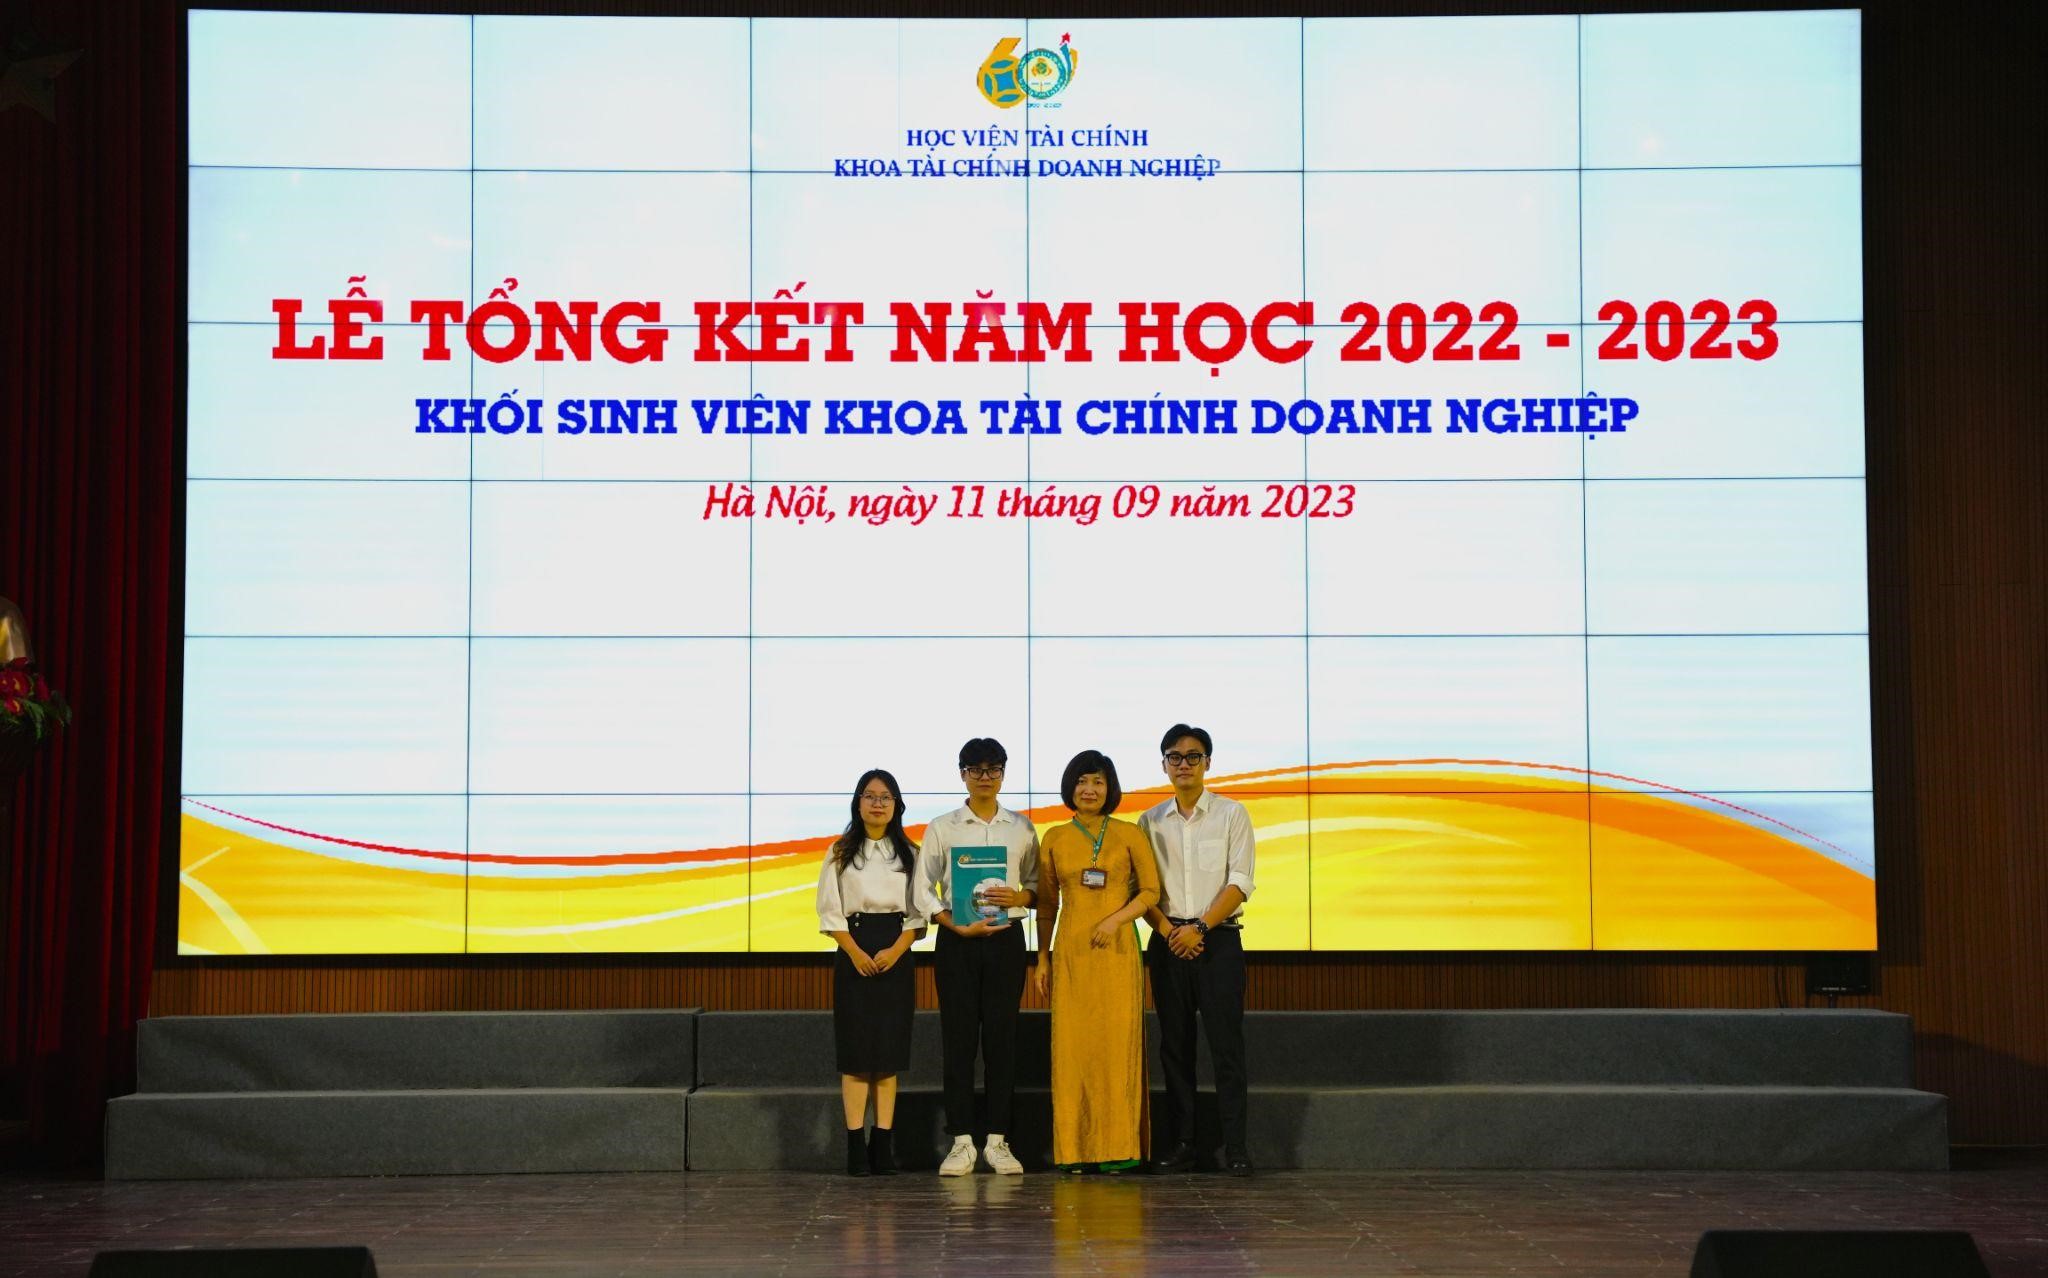  TS. Nguyễn Thị Thanh - Trưởng bộ môn PTTC trao phần thưởng của Bộ môn PTTC cho các sinh viên chuyên ngành PTTC đạt giải nhất NCKH cấp Học viện